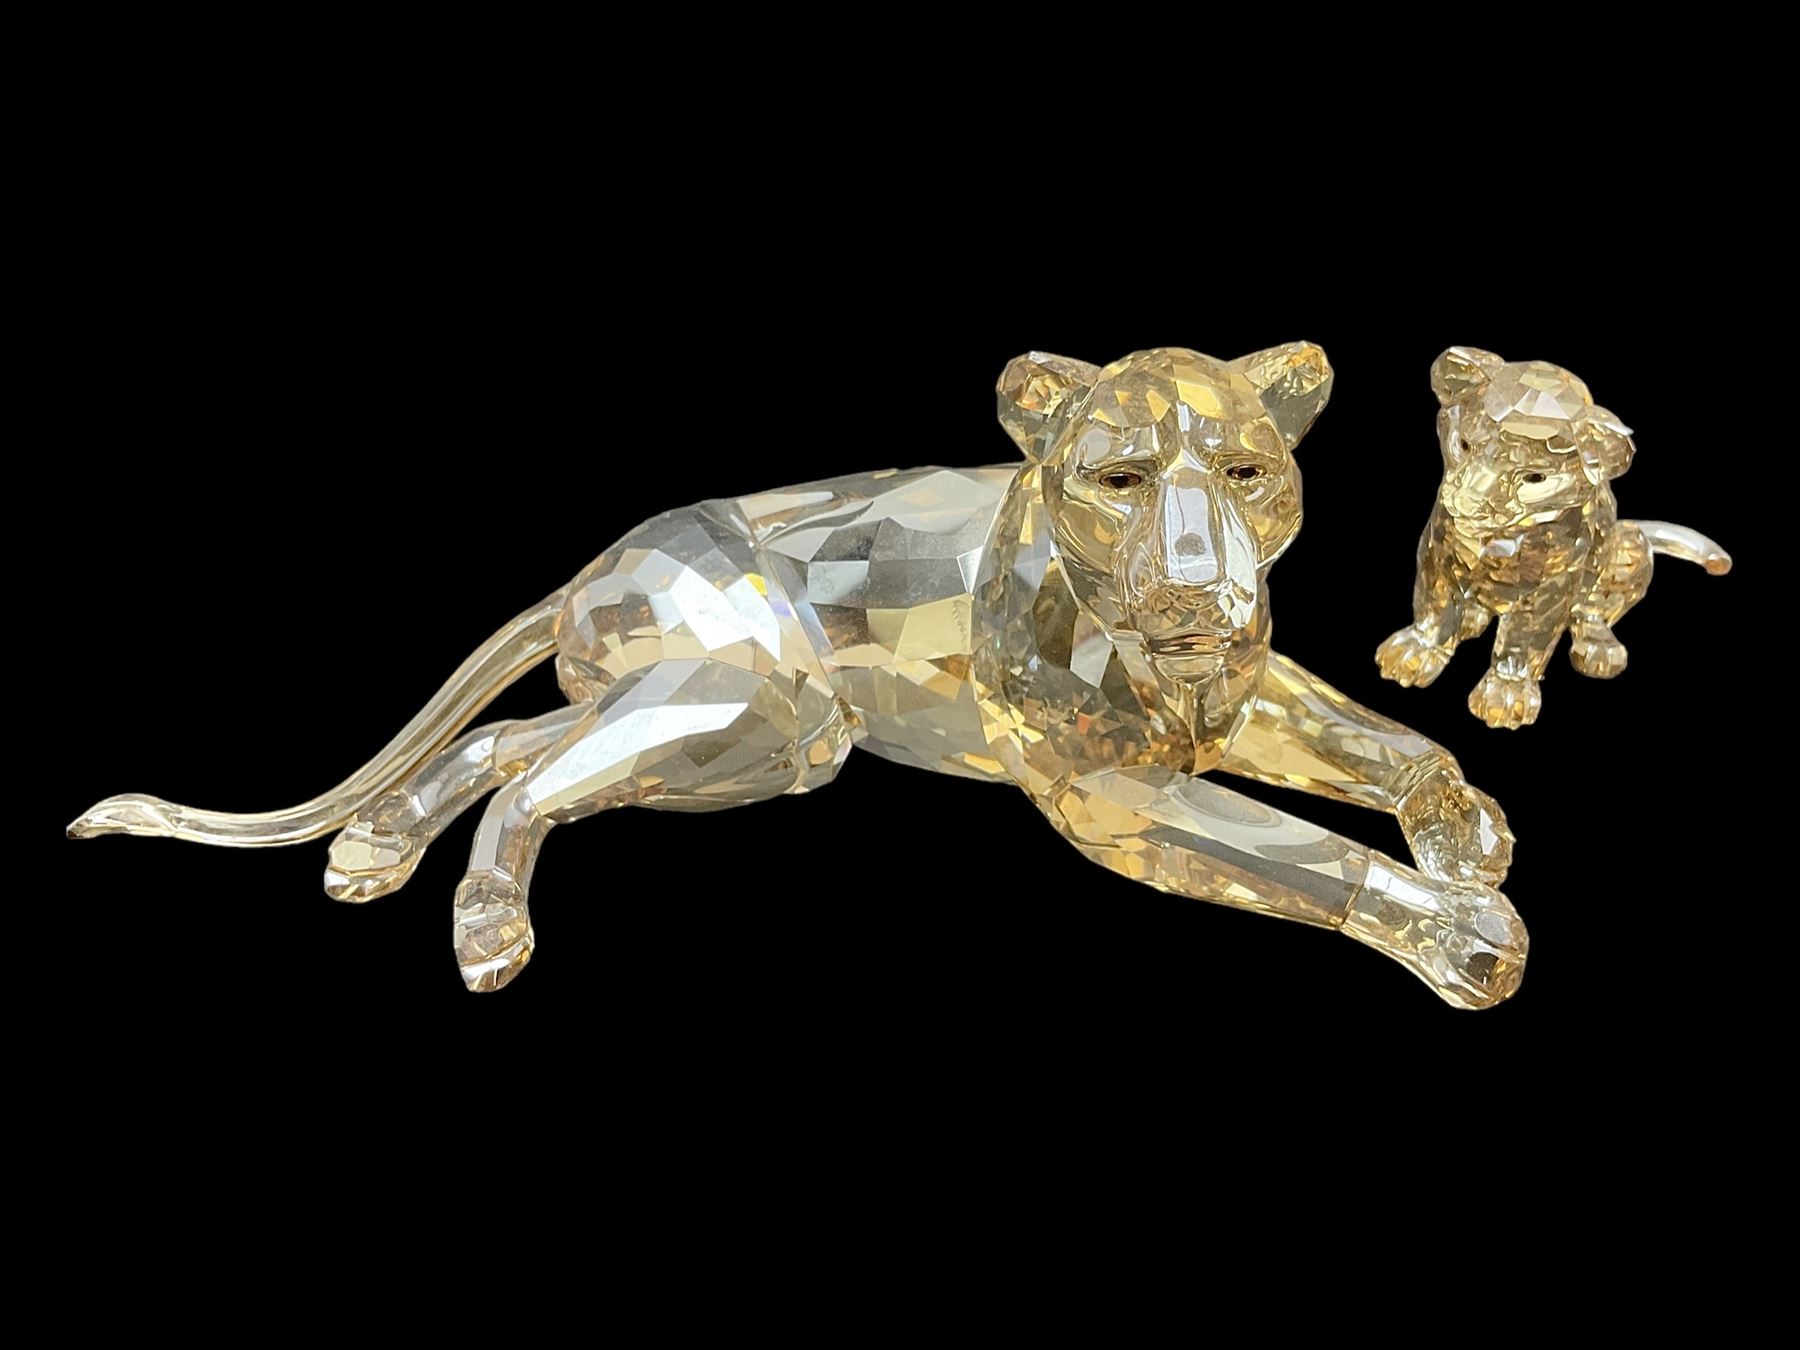 Swarovski Crystal lioness and cub